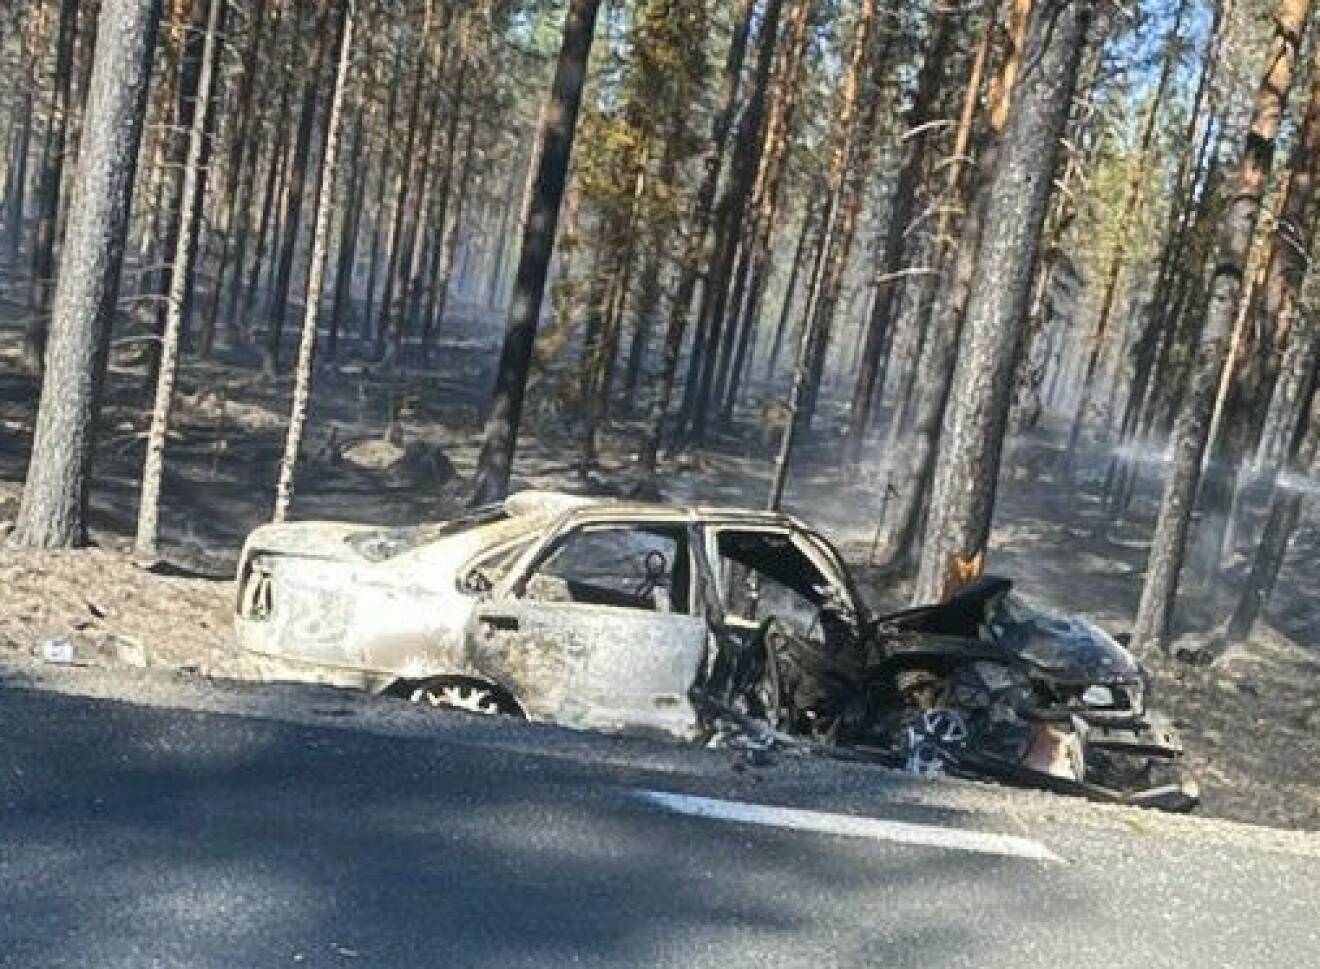 Oskars bil började brinna i bilkraschen och blev helt utbränd.